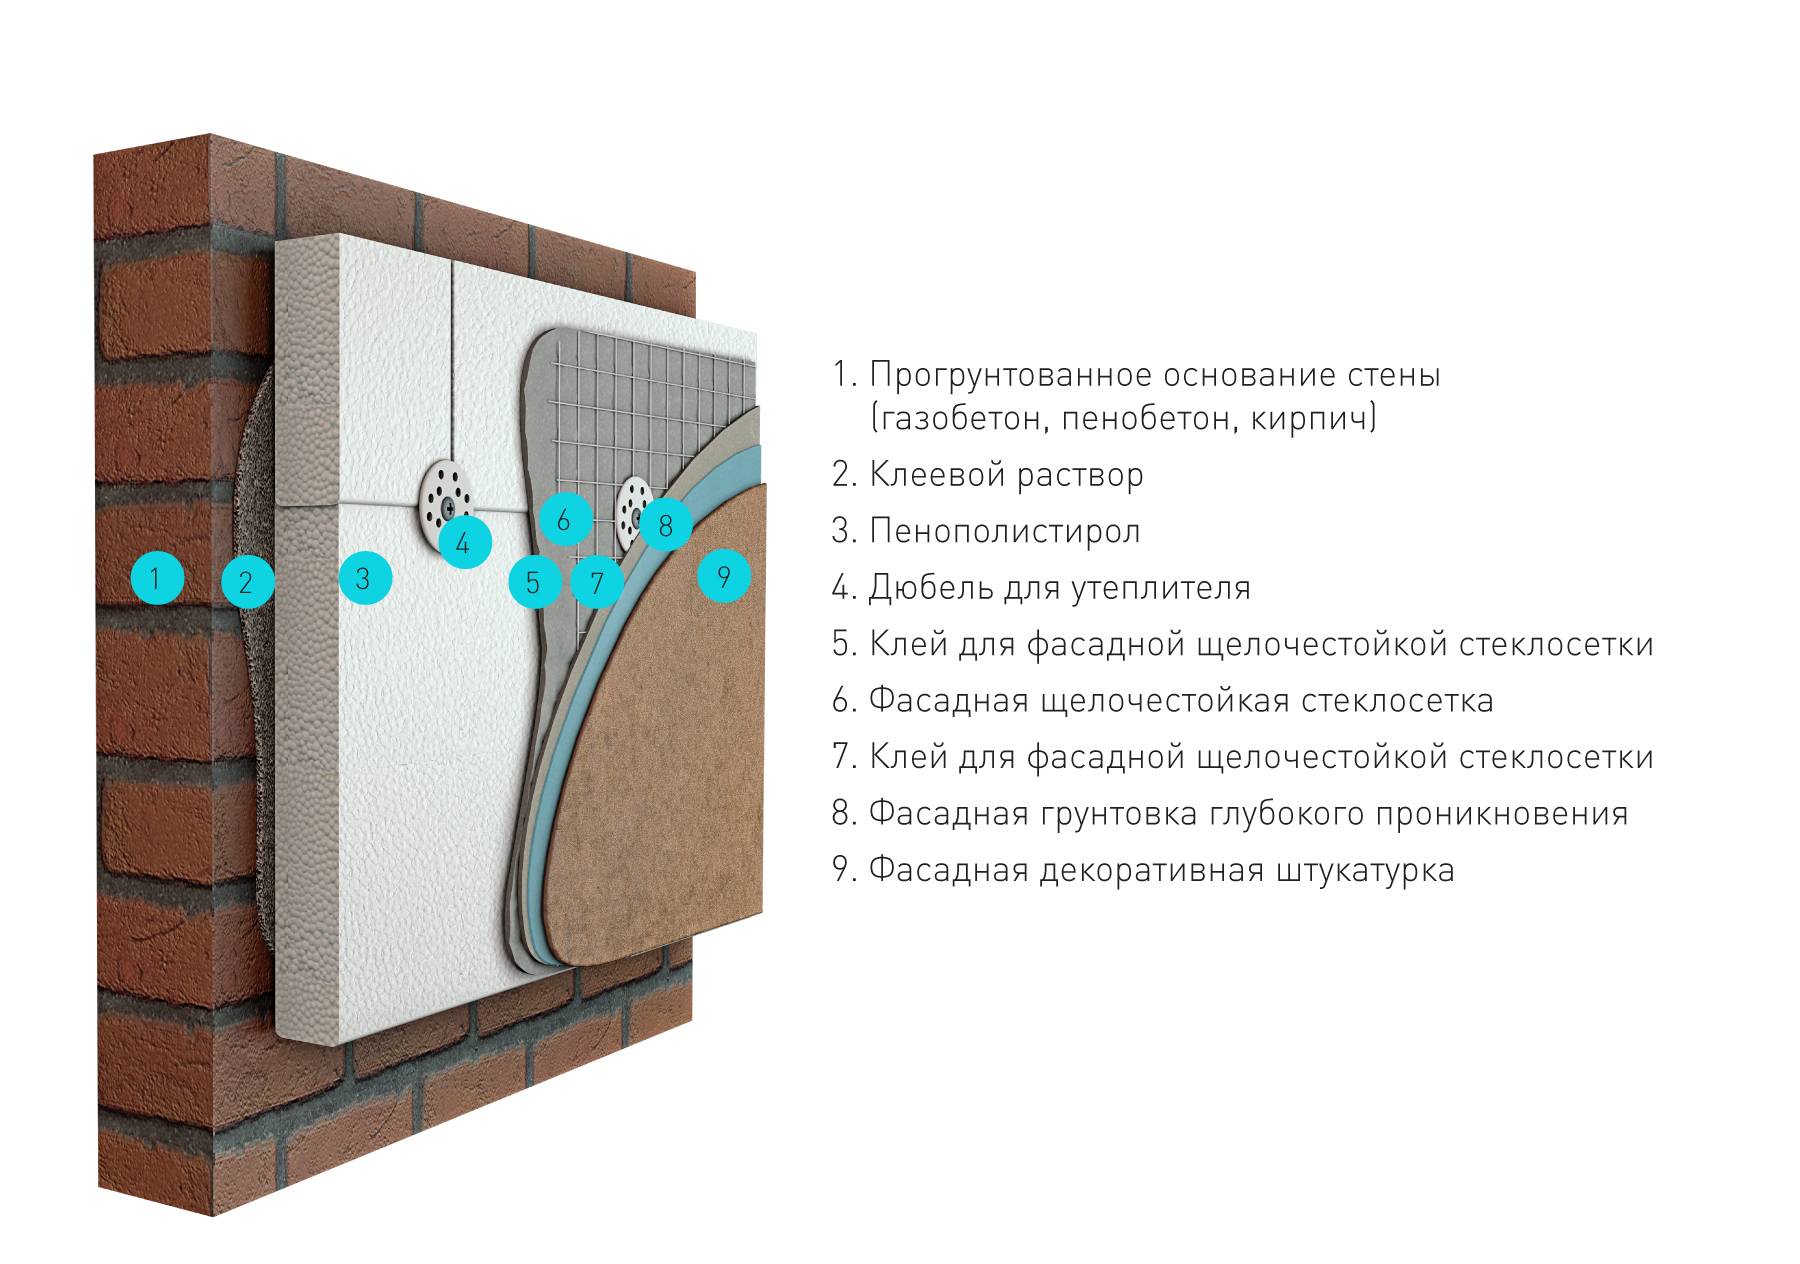 Как происходит утепление стен дома из разного материала снаружи, и можно ли это сделать самостоятельно?